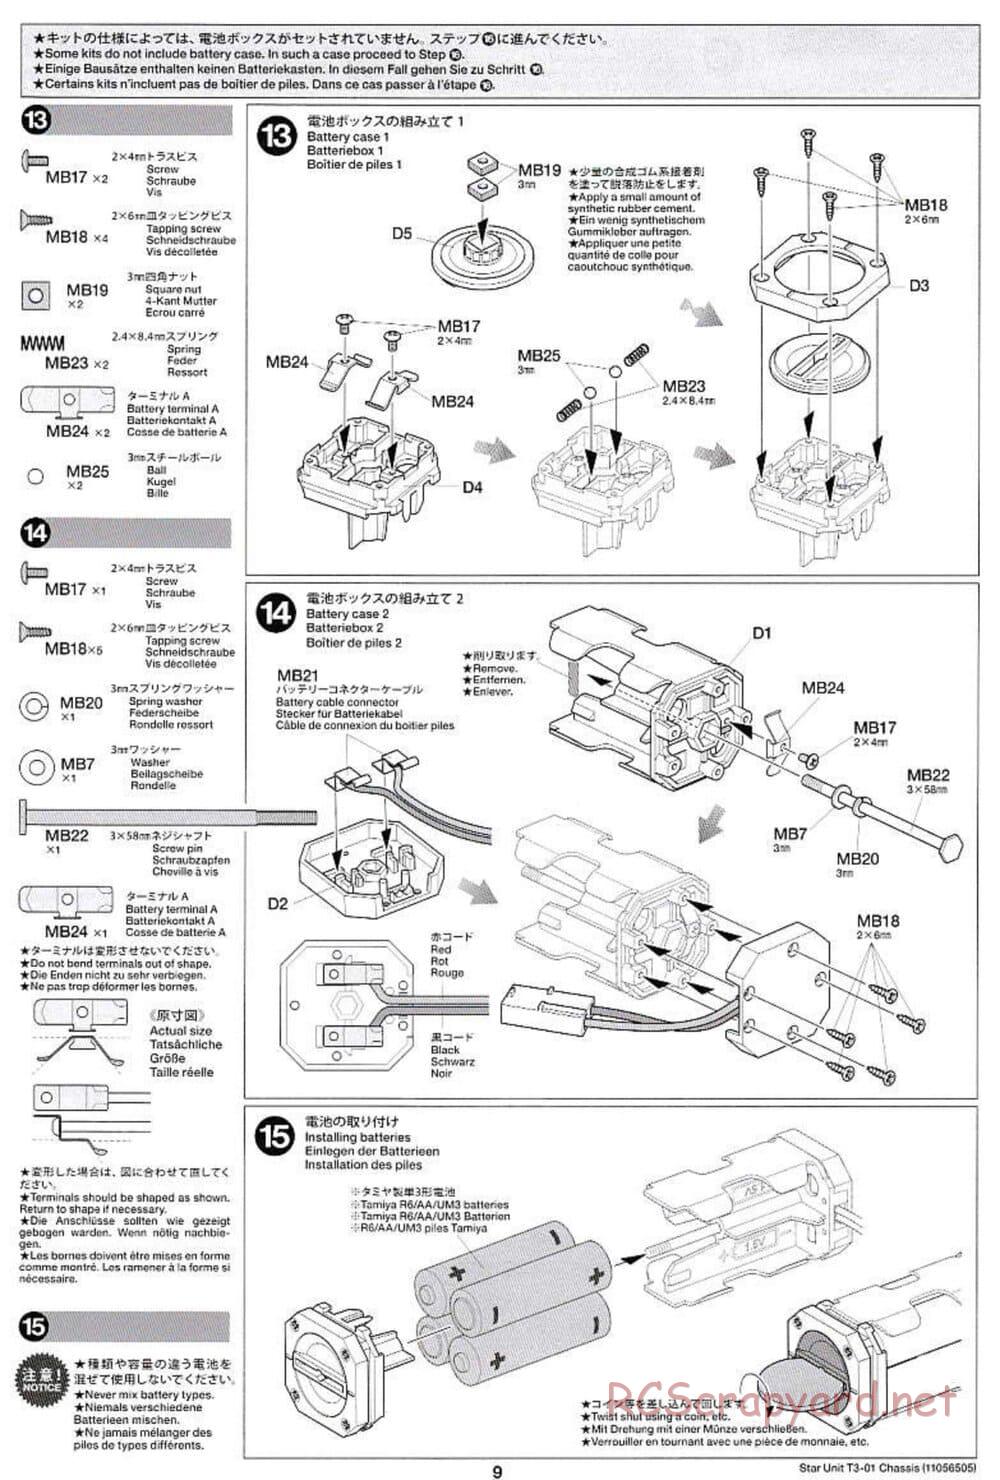 Tamiya - T3-01 Chassis - Manual - Page 9